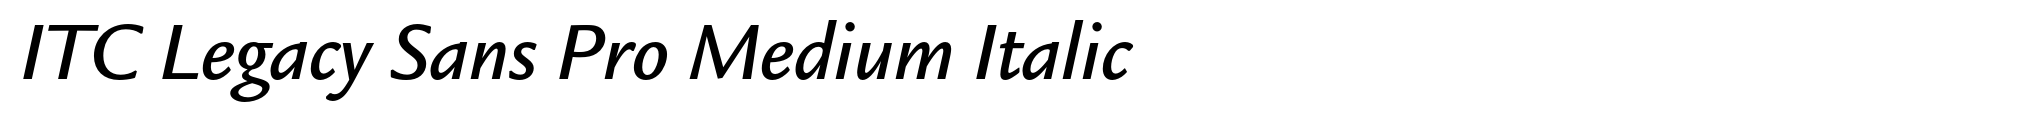 ITC Legacy Sans Pro Medium Italic image